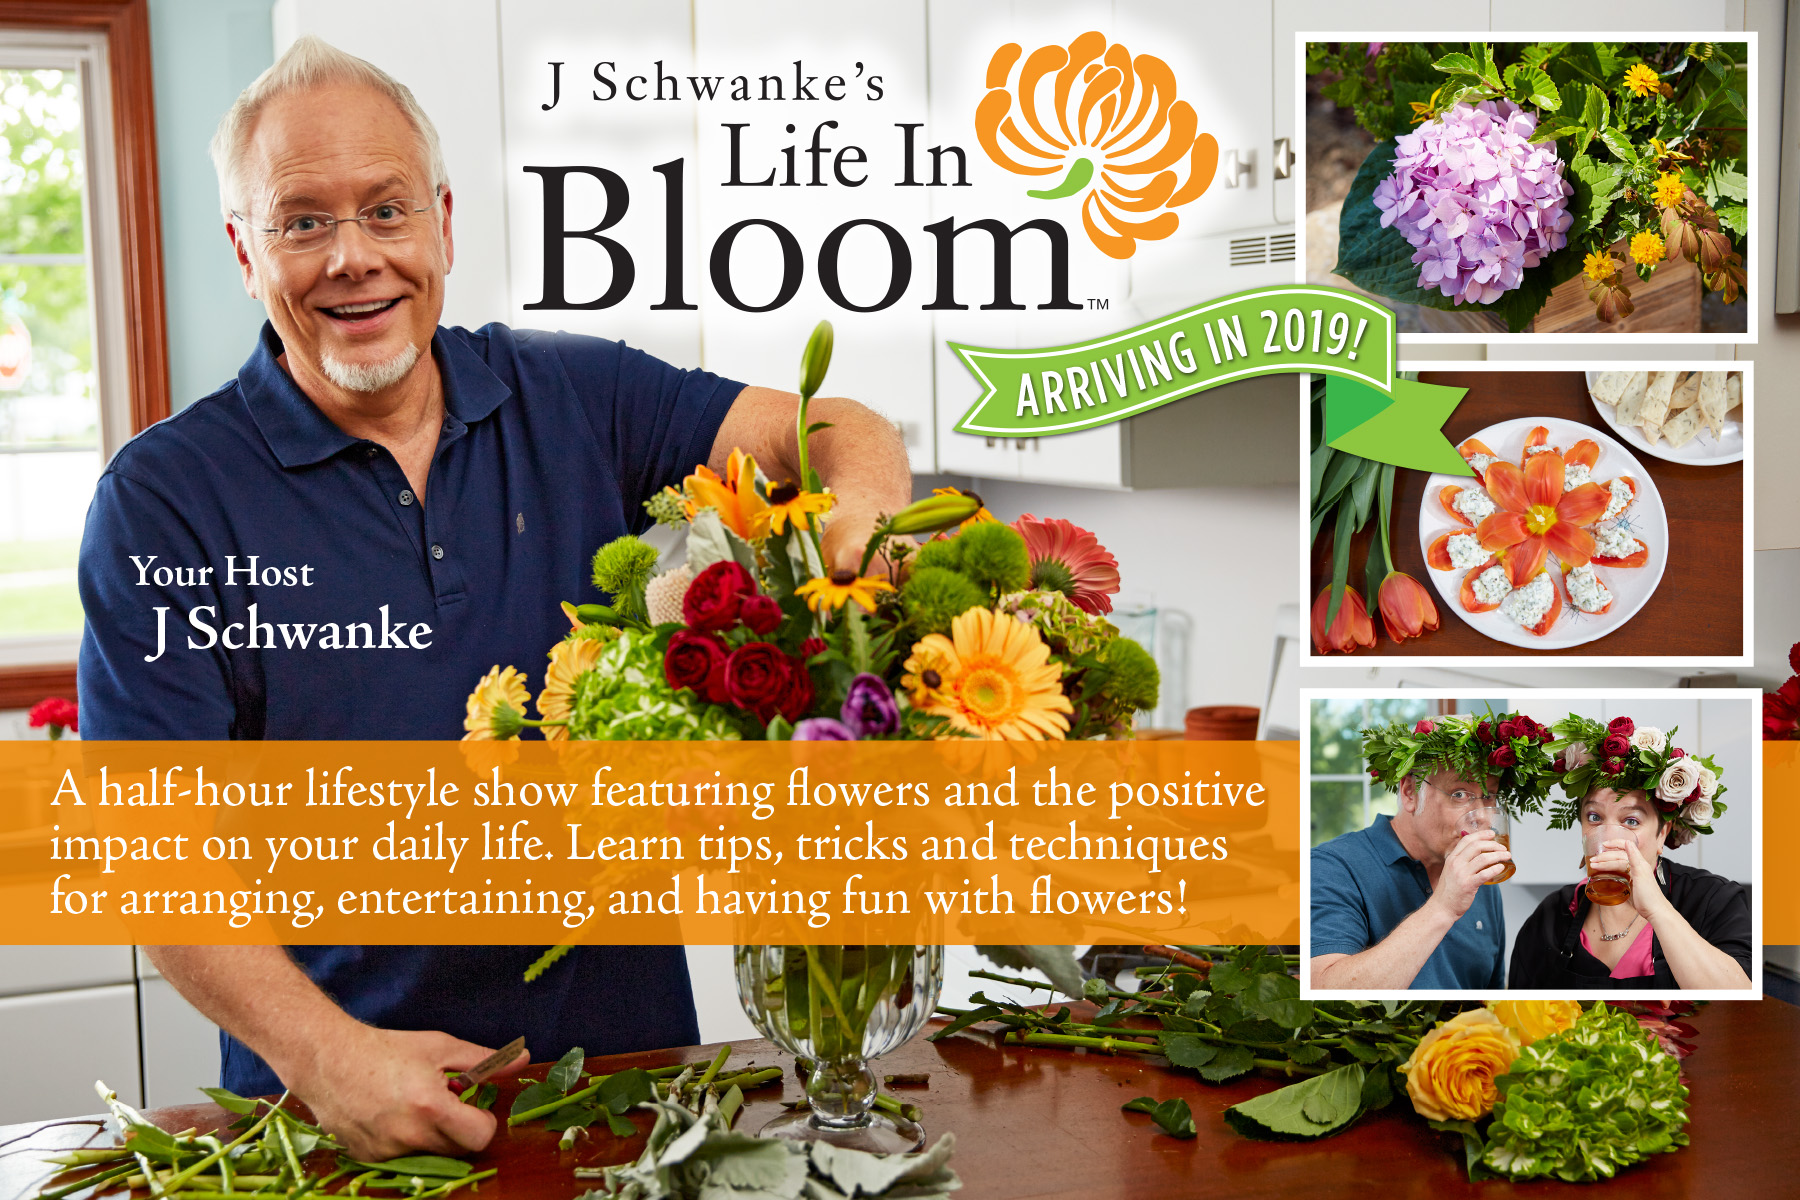 J Schwanke's Life in Bloom